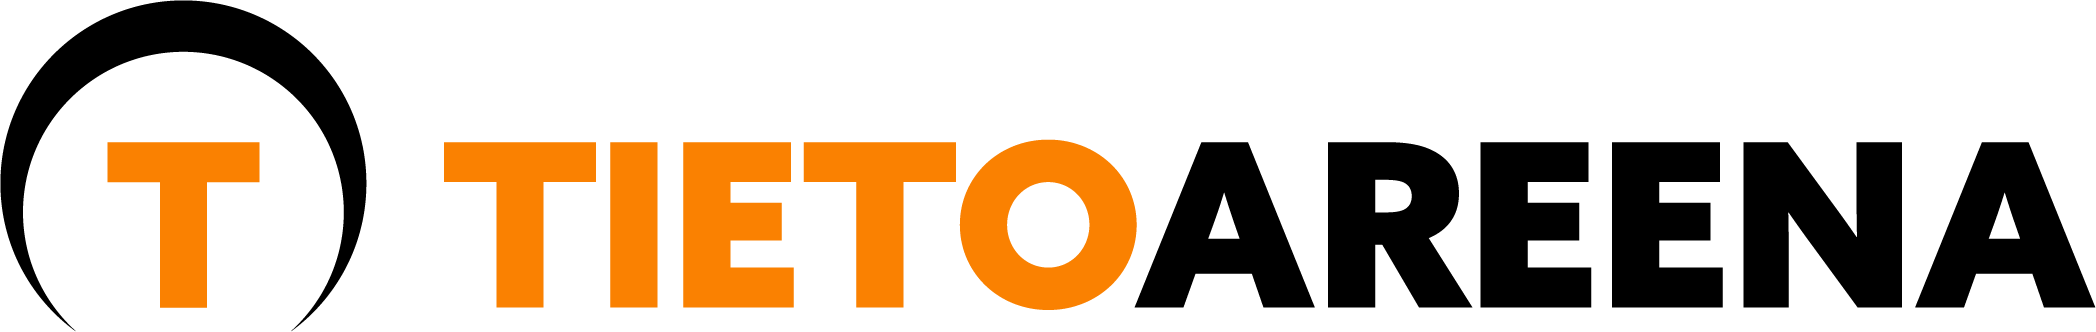 TietoAreena-horizontallogo-orange-black-web